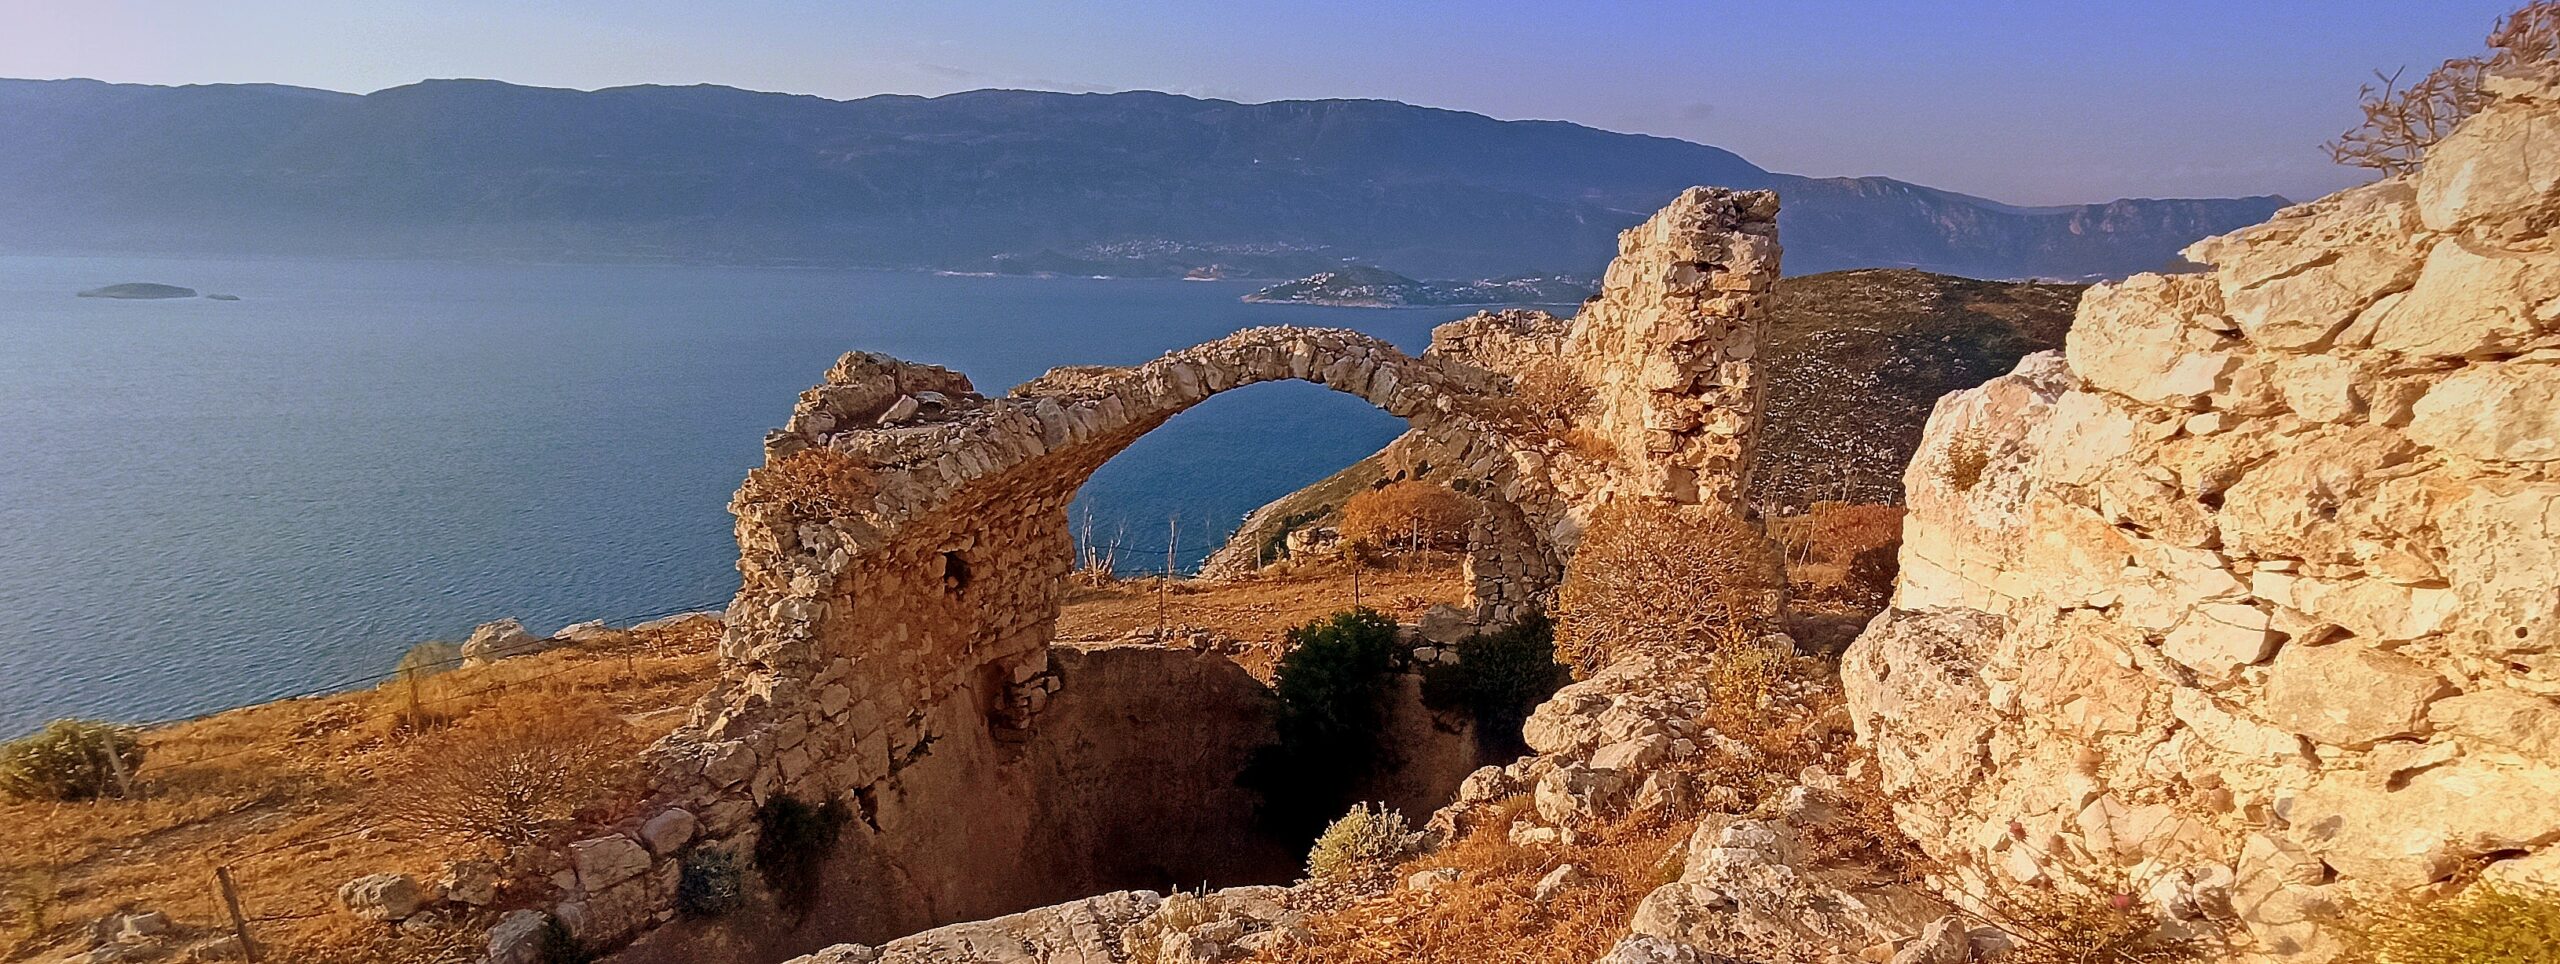 Architetti “in viaggio” tra le vie del Mare Mediterraneo. La Giornata del Paesaggio: abitare sulle orme di Ulisse